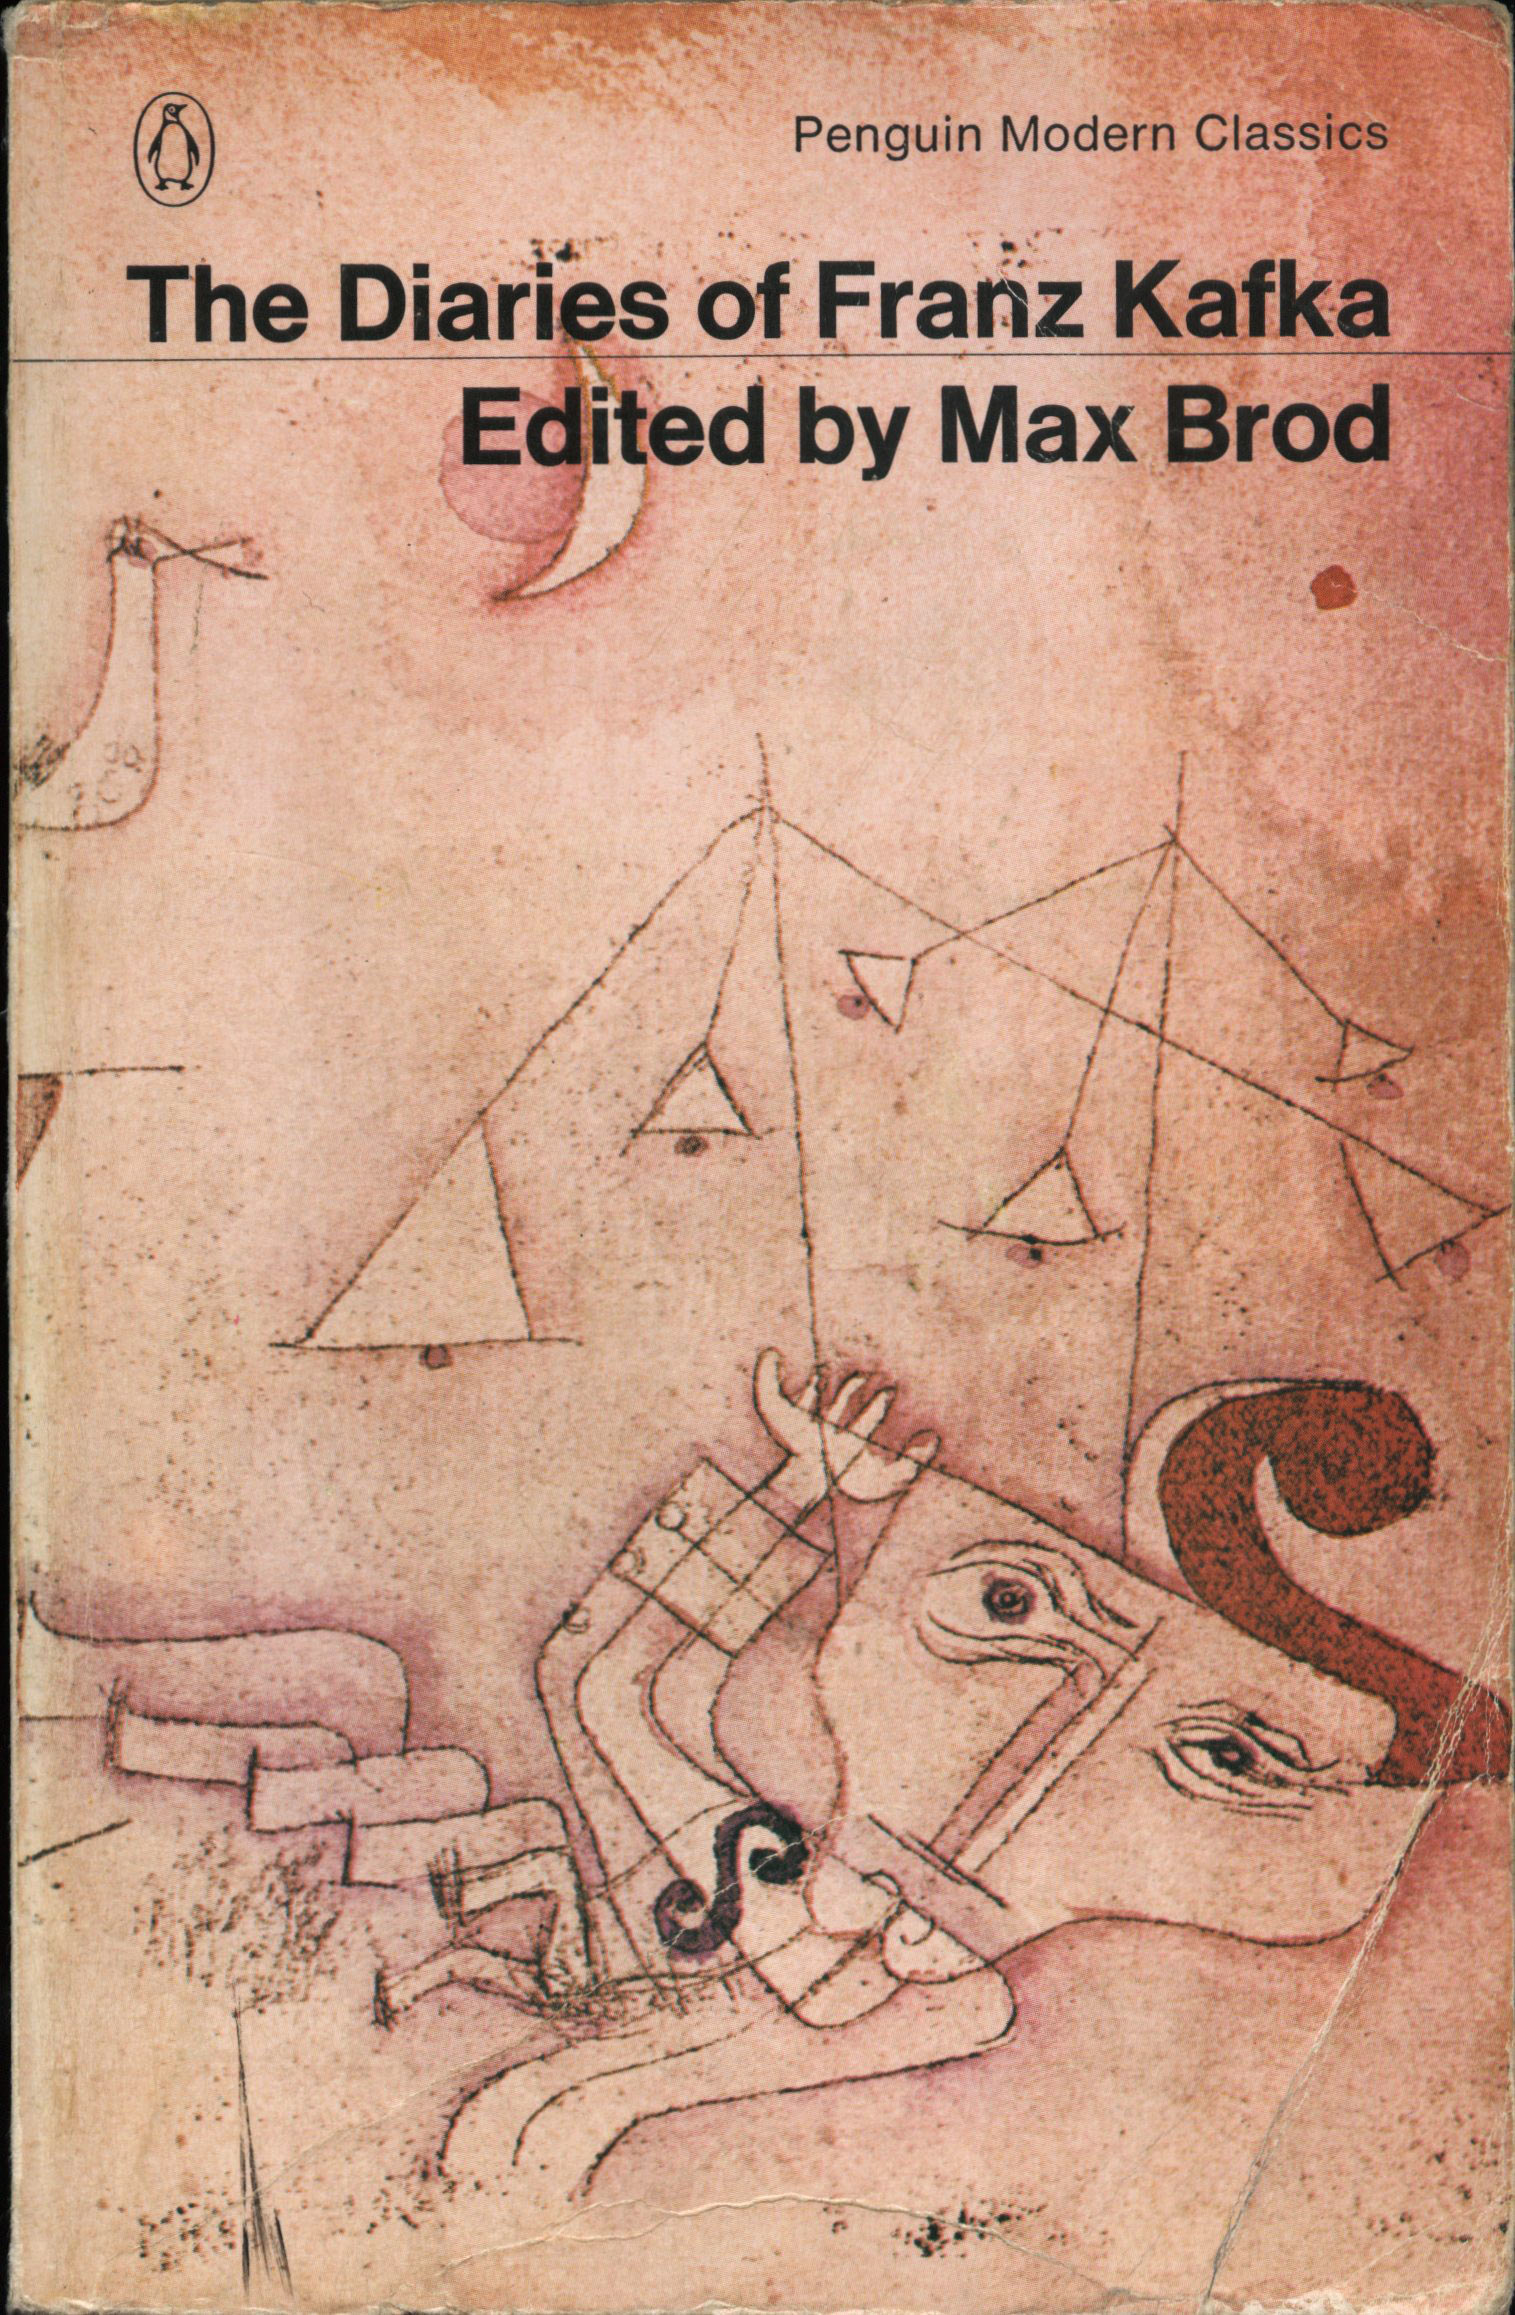 יומניו של פרנץ קפקא. כריכת המהדורה שראתה אור ב־1964. מקס ברוד פרסם את היומנים לראשונה ב־1949